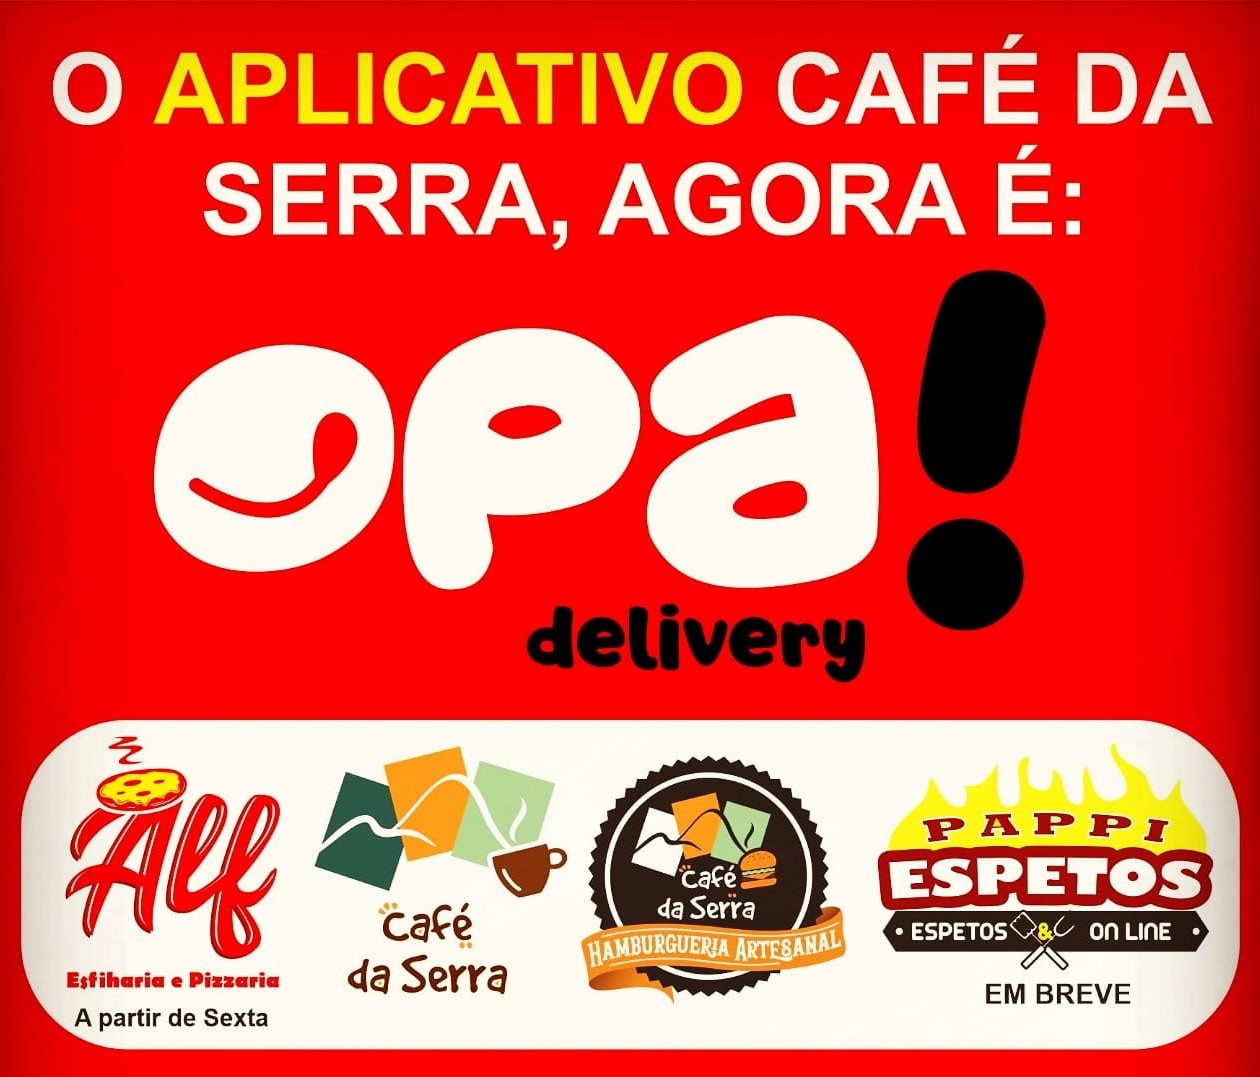 Segunda-feira de pernil, rabada da casa, canelone e mais 10 opções no Artesanatos e Café da Serra